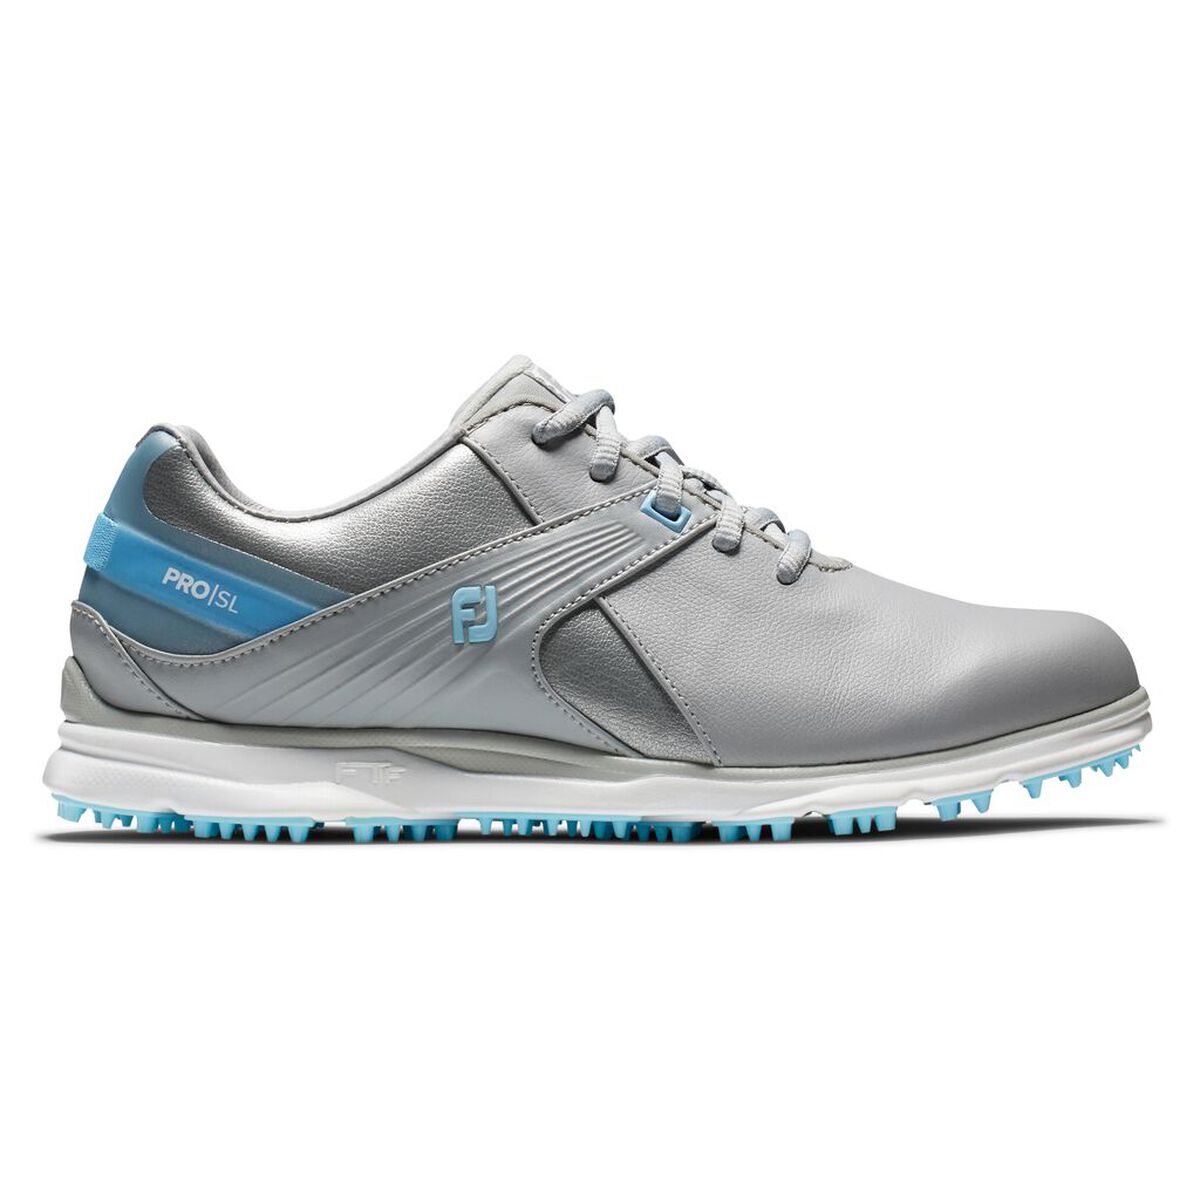 풋조이 우먼 골프화 FootJoy Pro,SL Womens Golf Shoe - Grey/Blue (Previous Season Style)